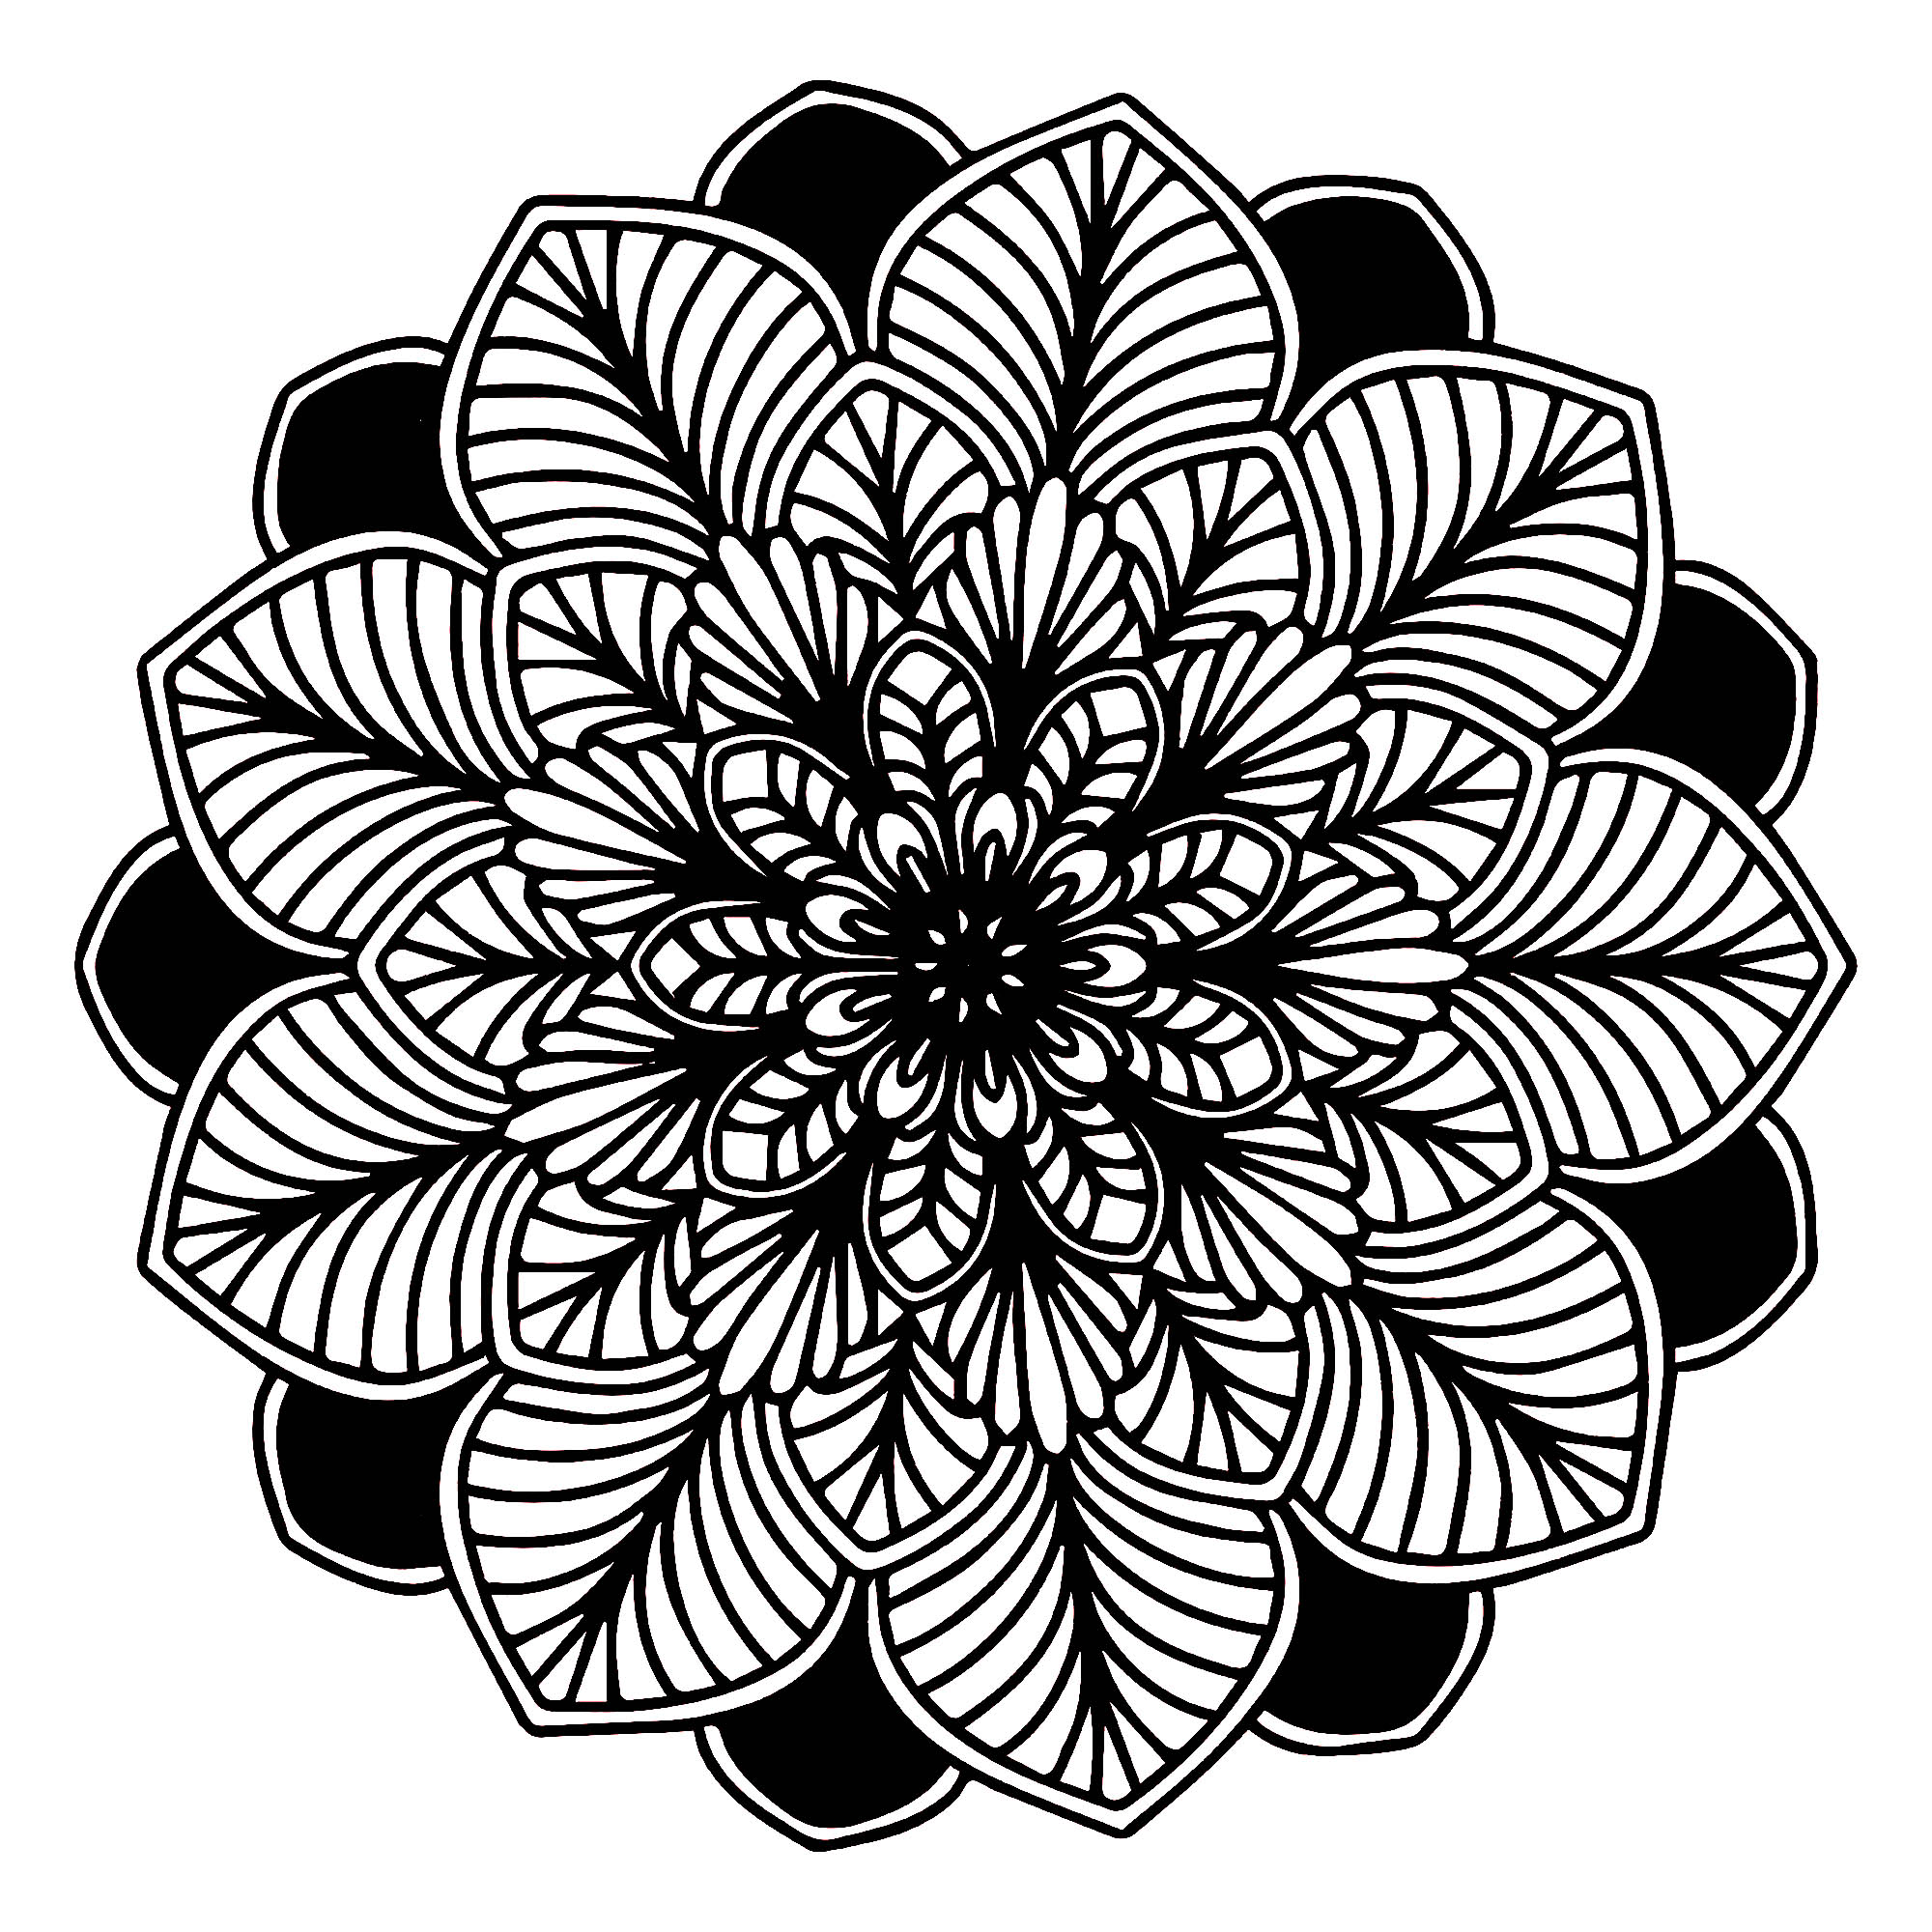 Des détails relativement faciles à colorier, avec zones noires, pour un coloriage de Mandala sombre très original et de grande qualité.